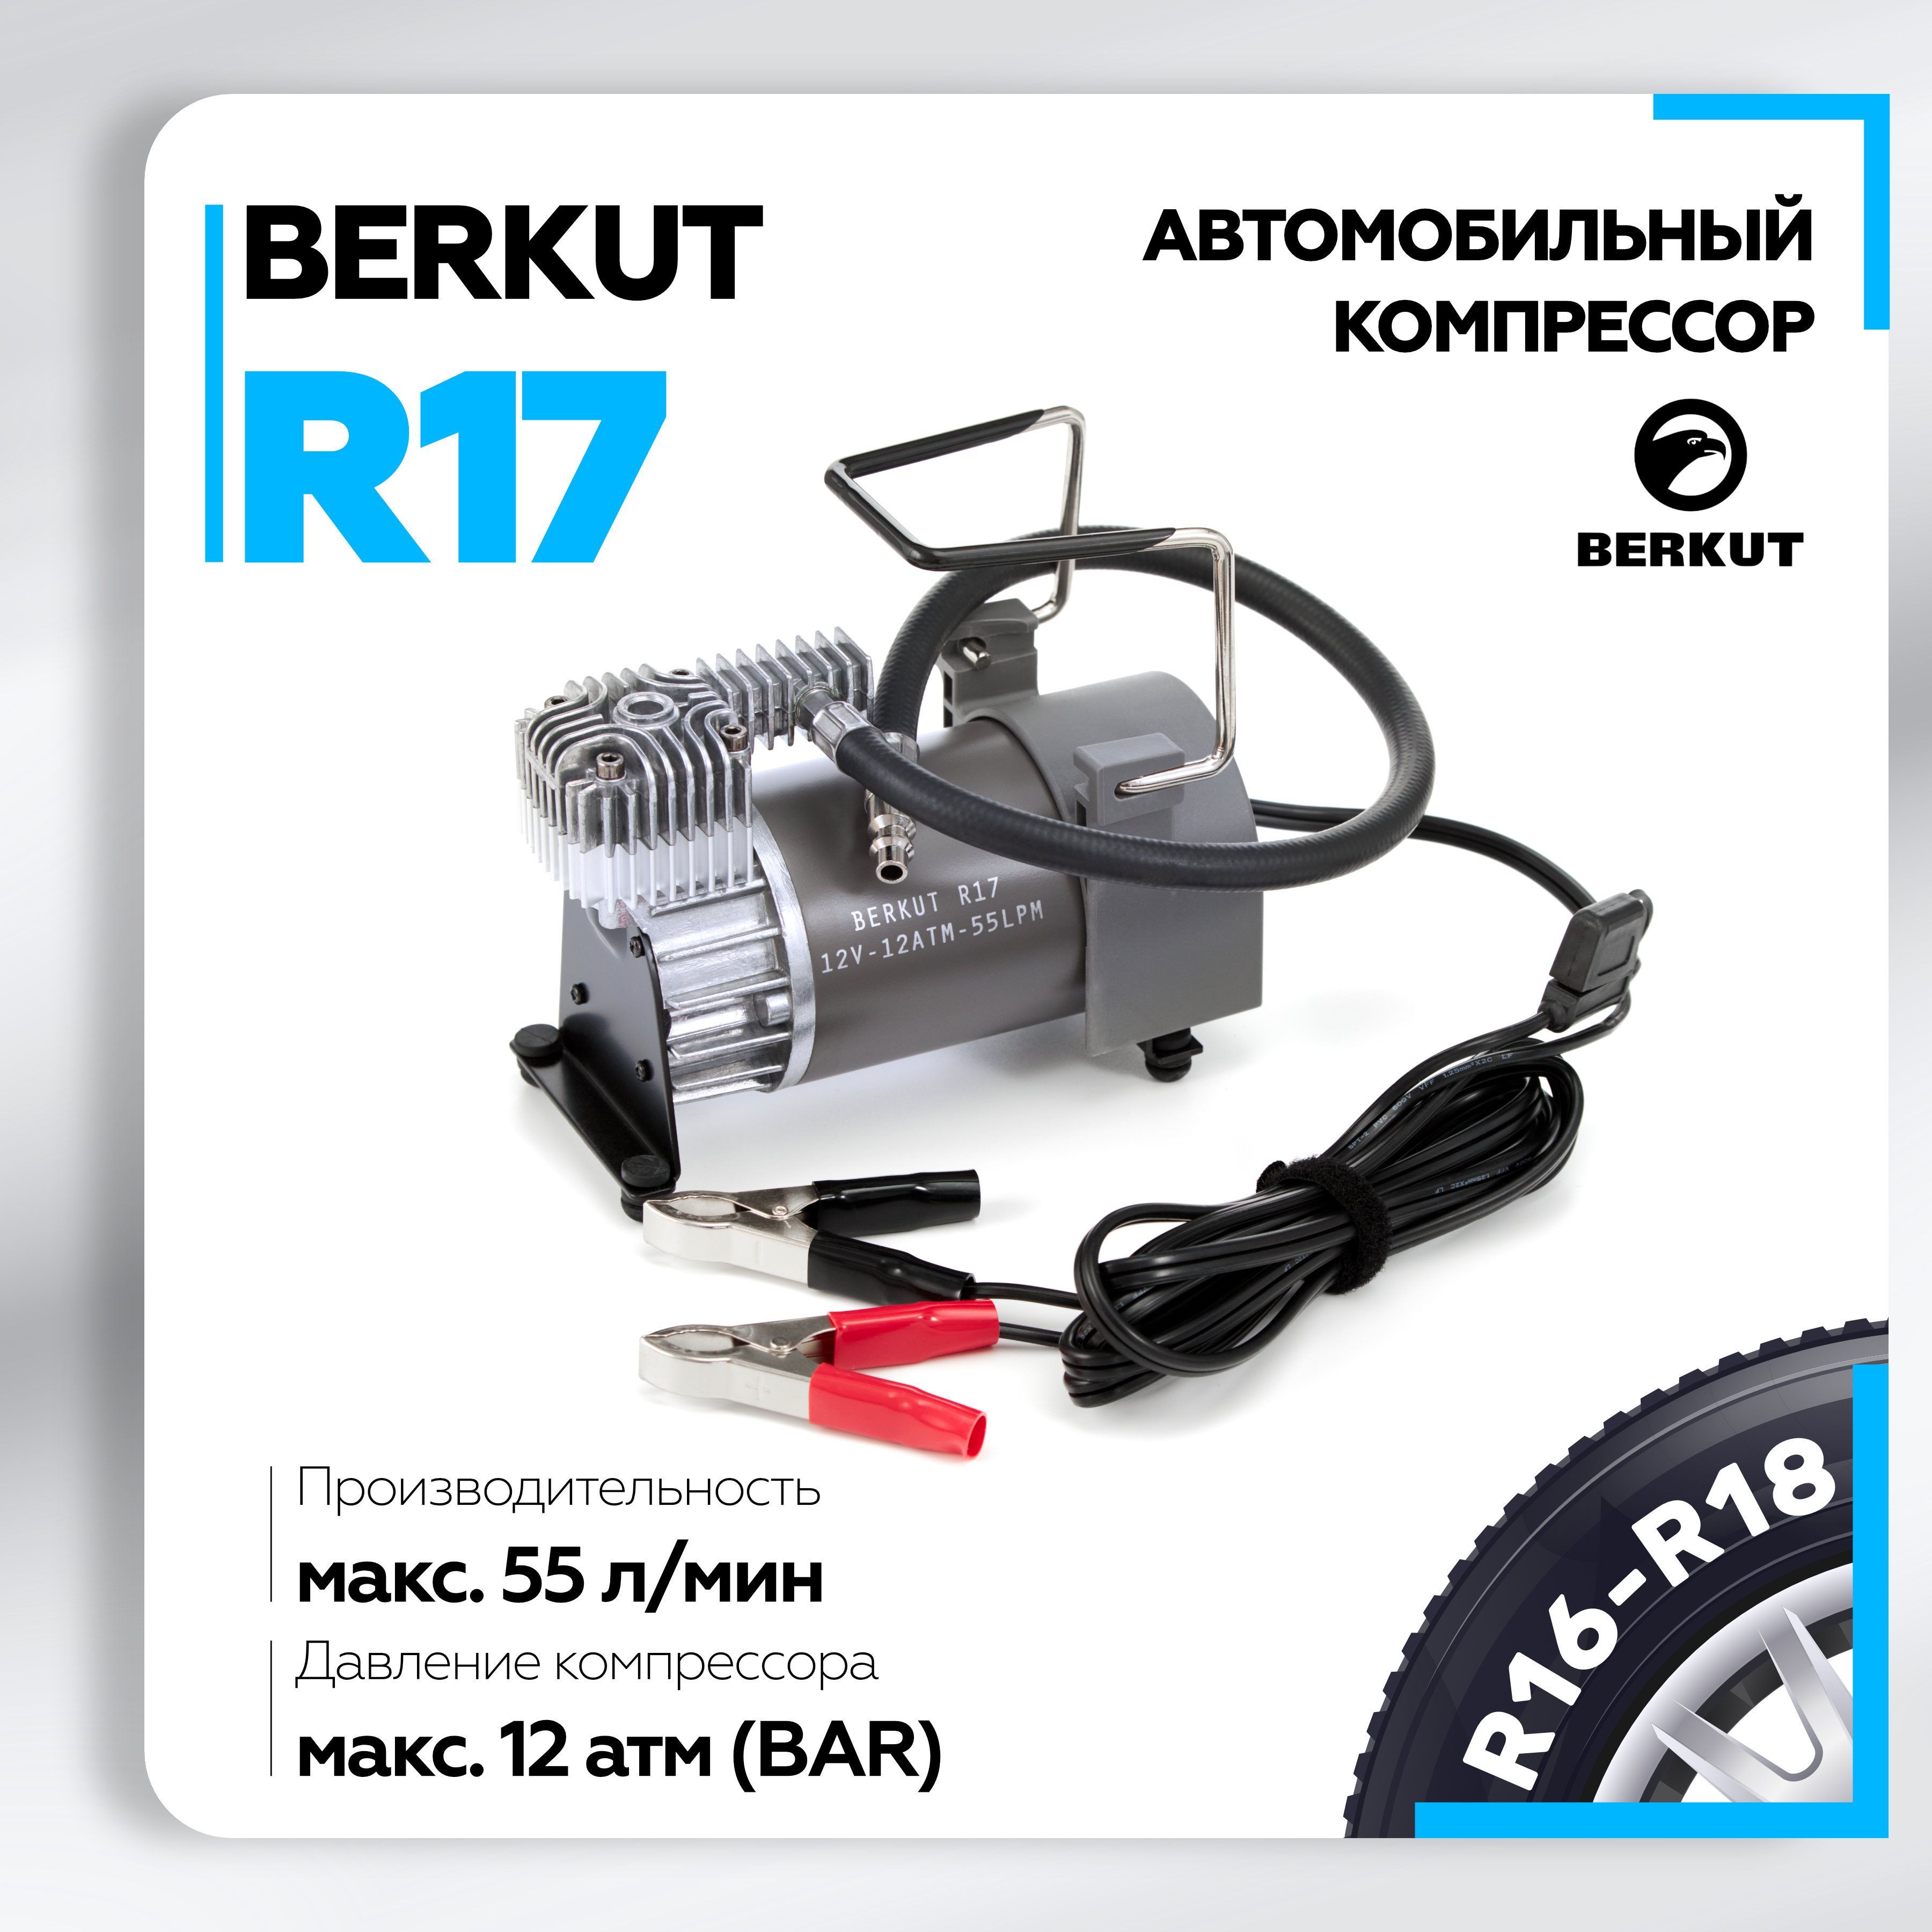 Беркут R17 –  автомобильный компрессор в е  .